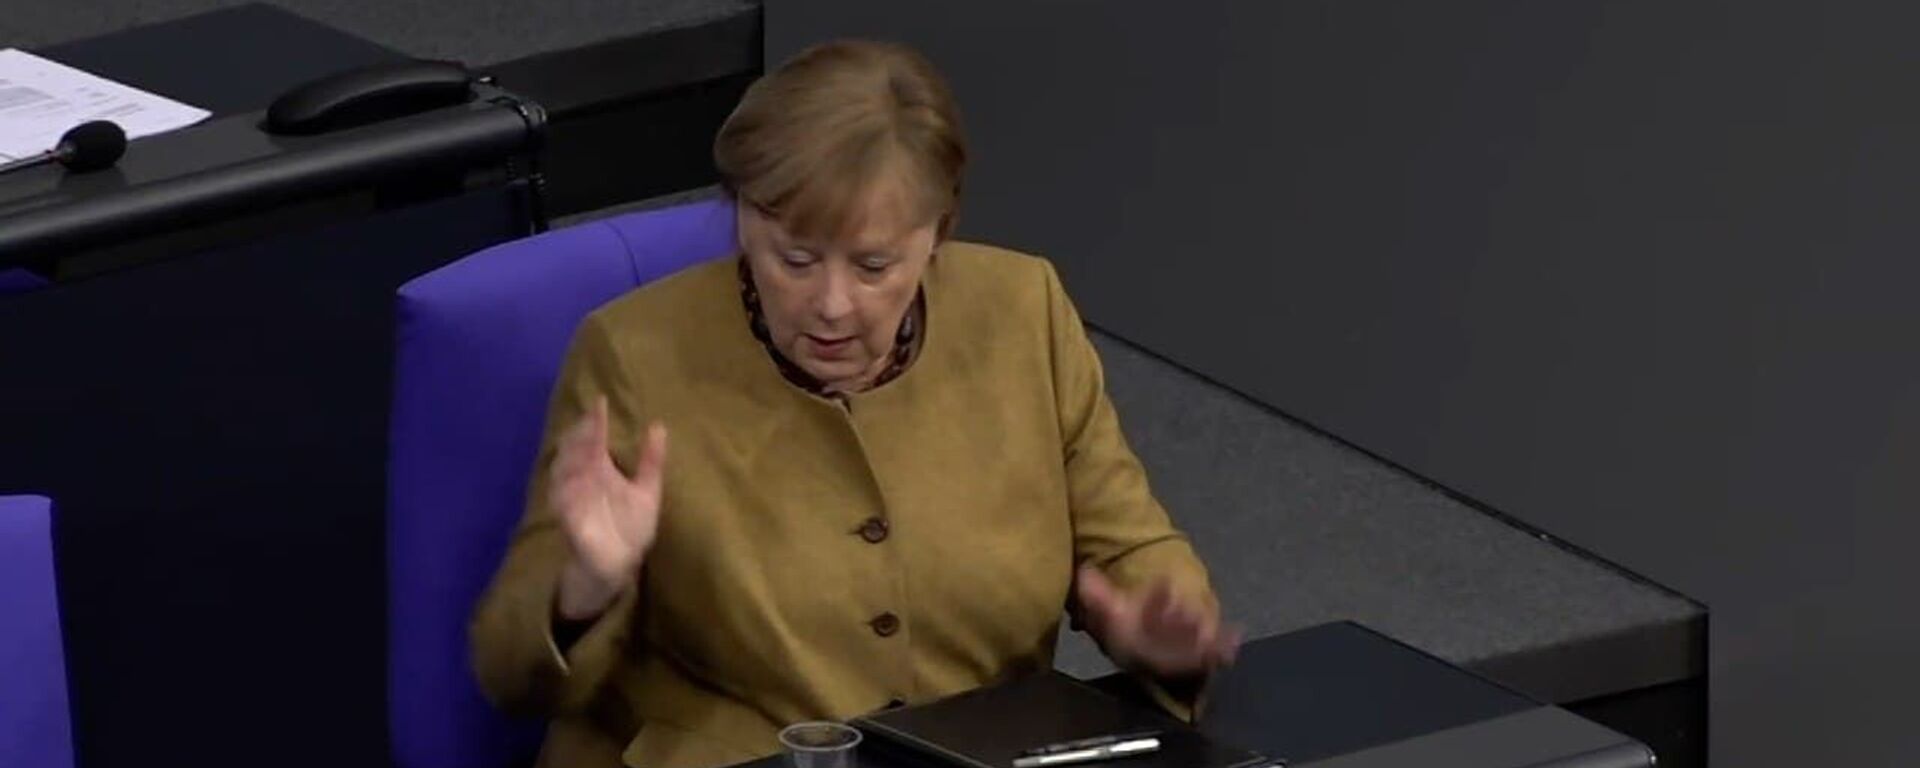 Меркель забыла надеть маску: ее реакция на конфуз стала вирусной - видео - Sputnik Узбекистан, 1920, 19.02.2021